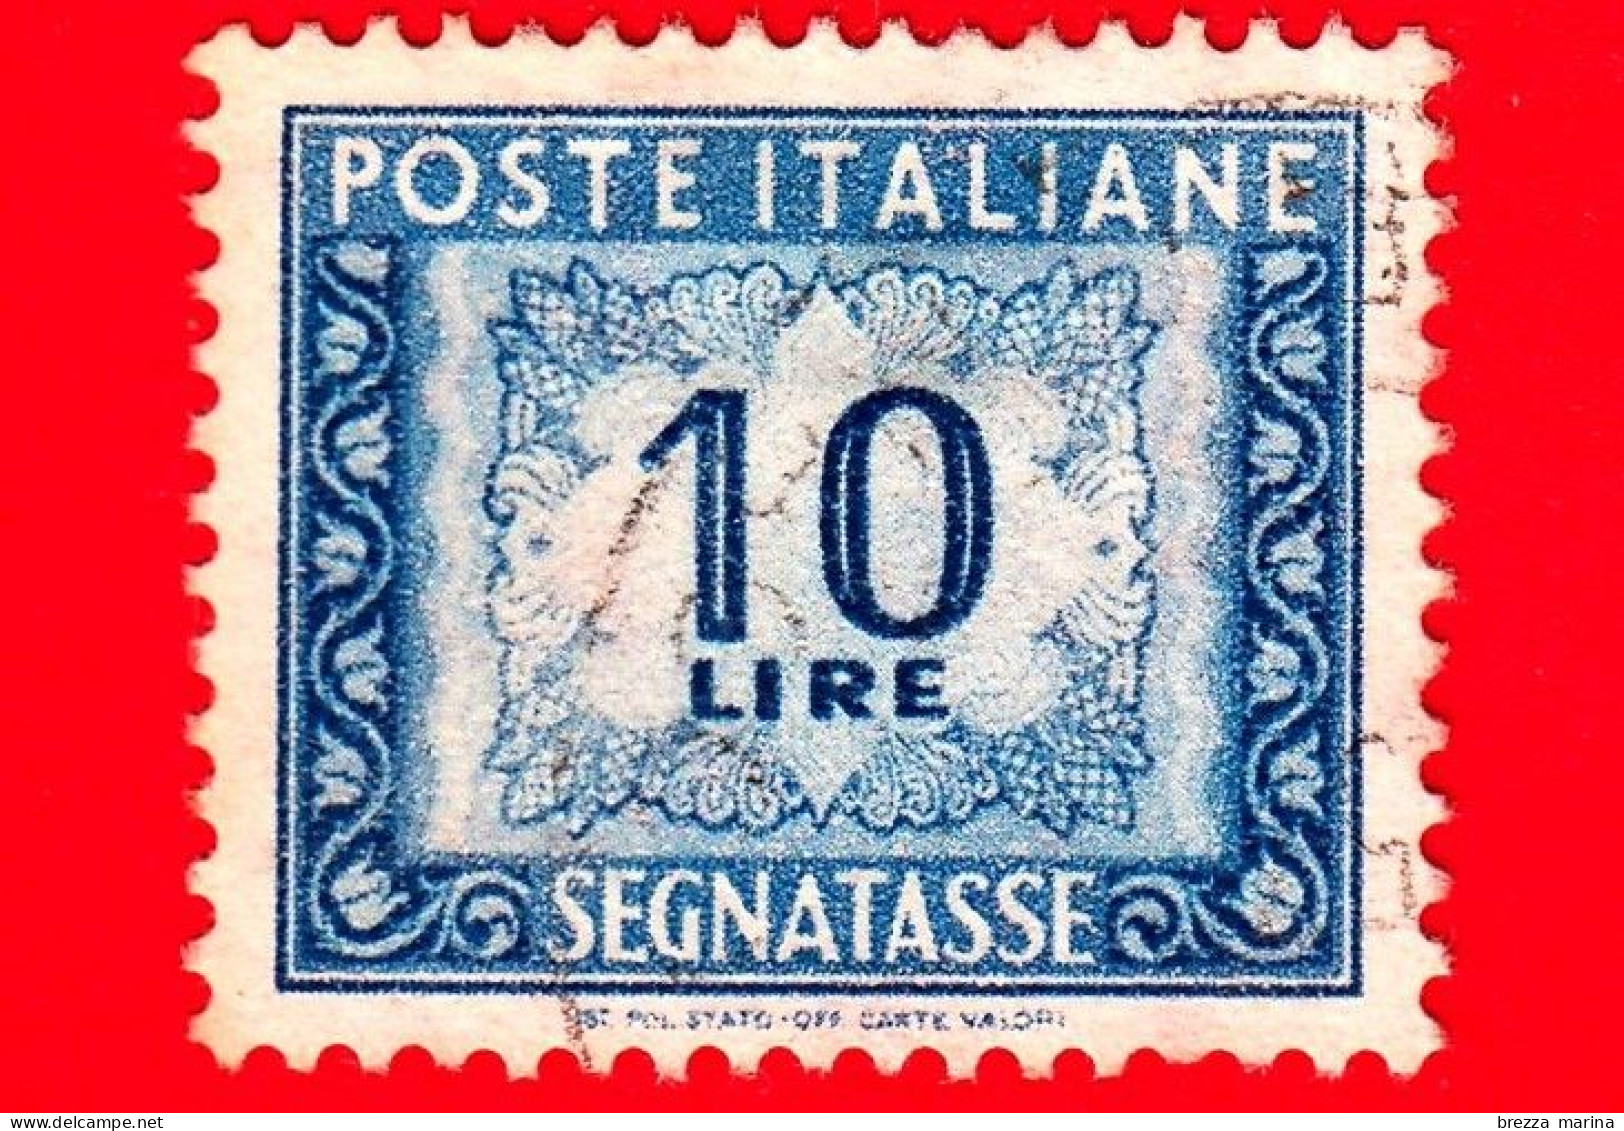 ITALIA - Usato - 1955 - Cifra E Decorazioni, Filigrana Stelle - Segnatasse - Cifra E Decorazioni - 10 L. - Taxe